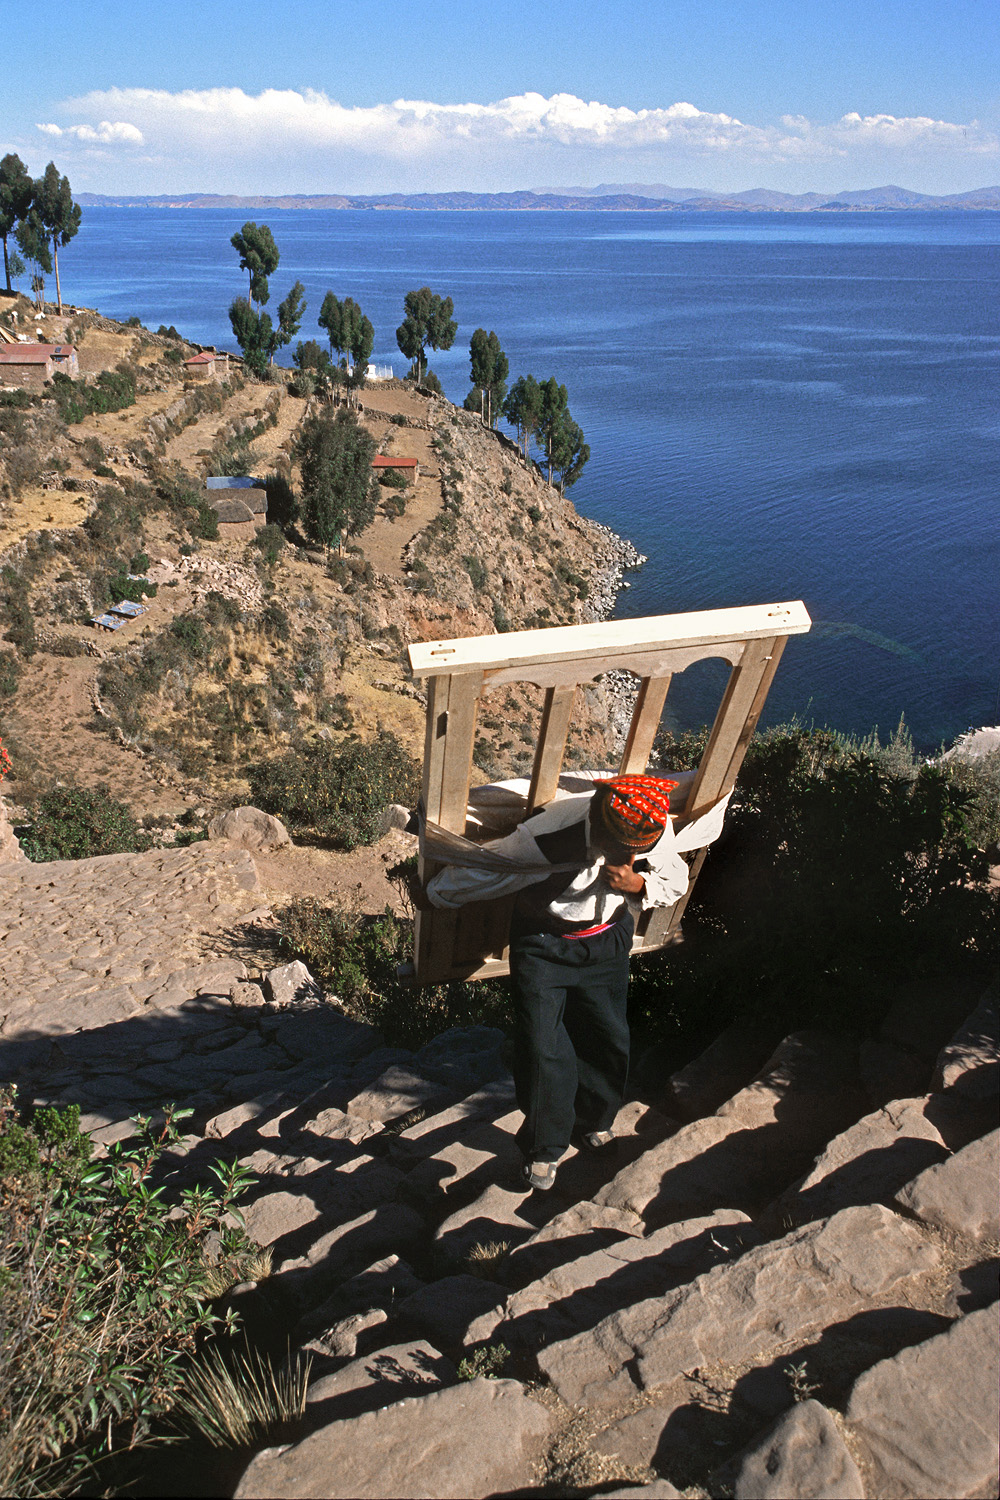 bill-hocker-island-transport-taquile-island-lake-titicaca-peru-2005